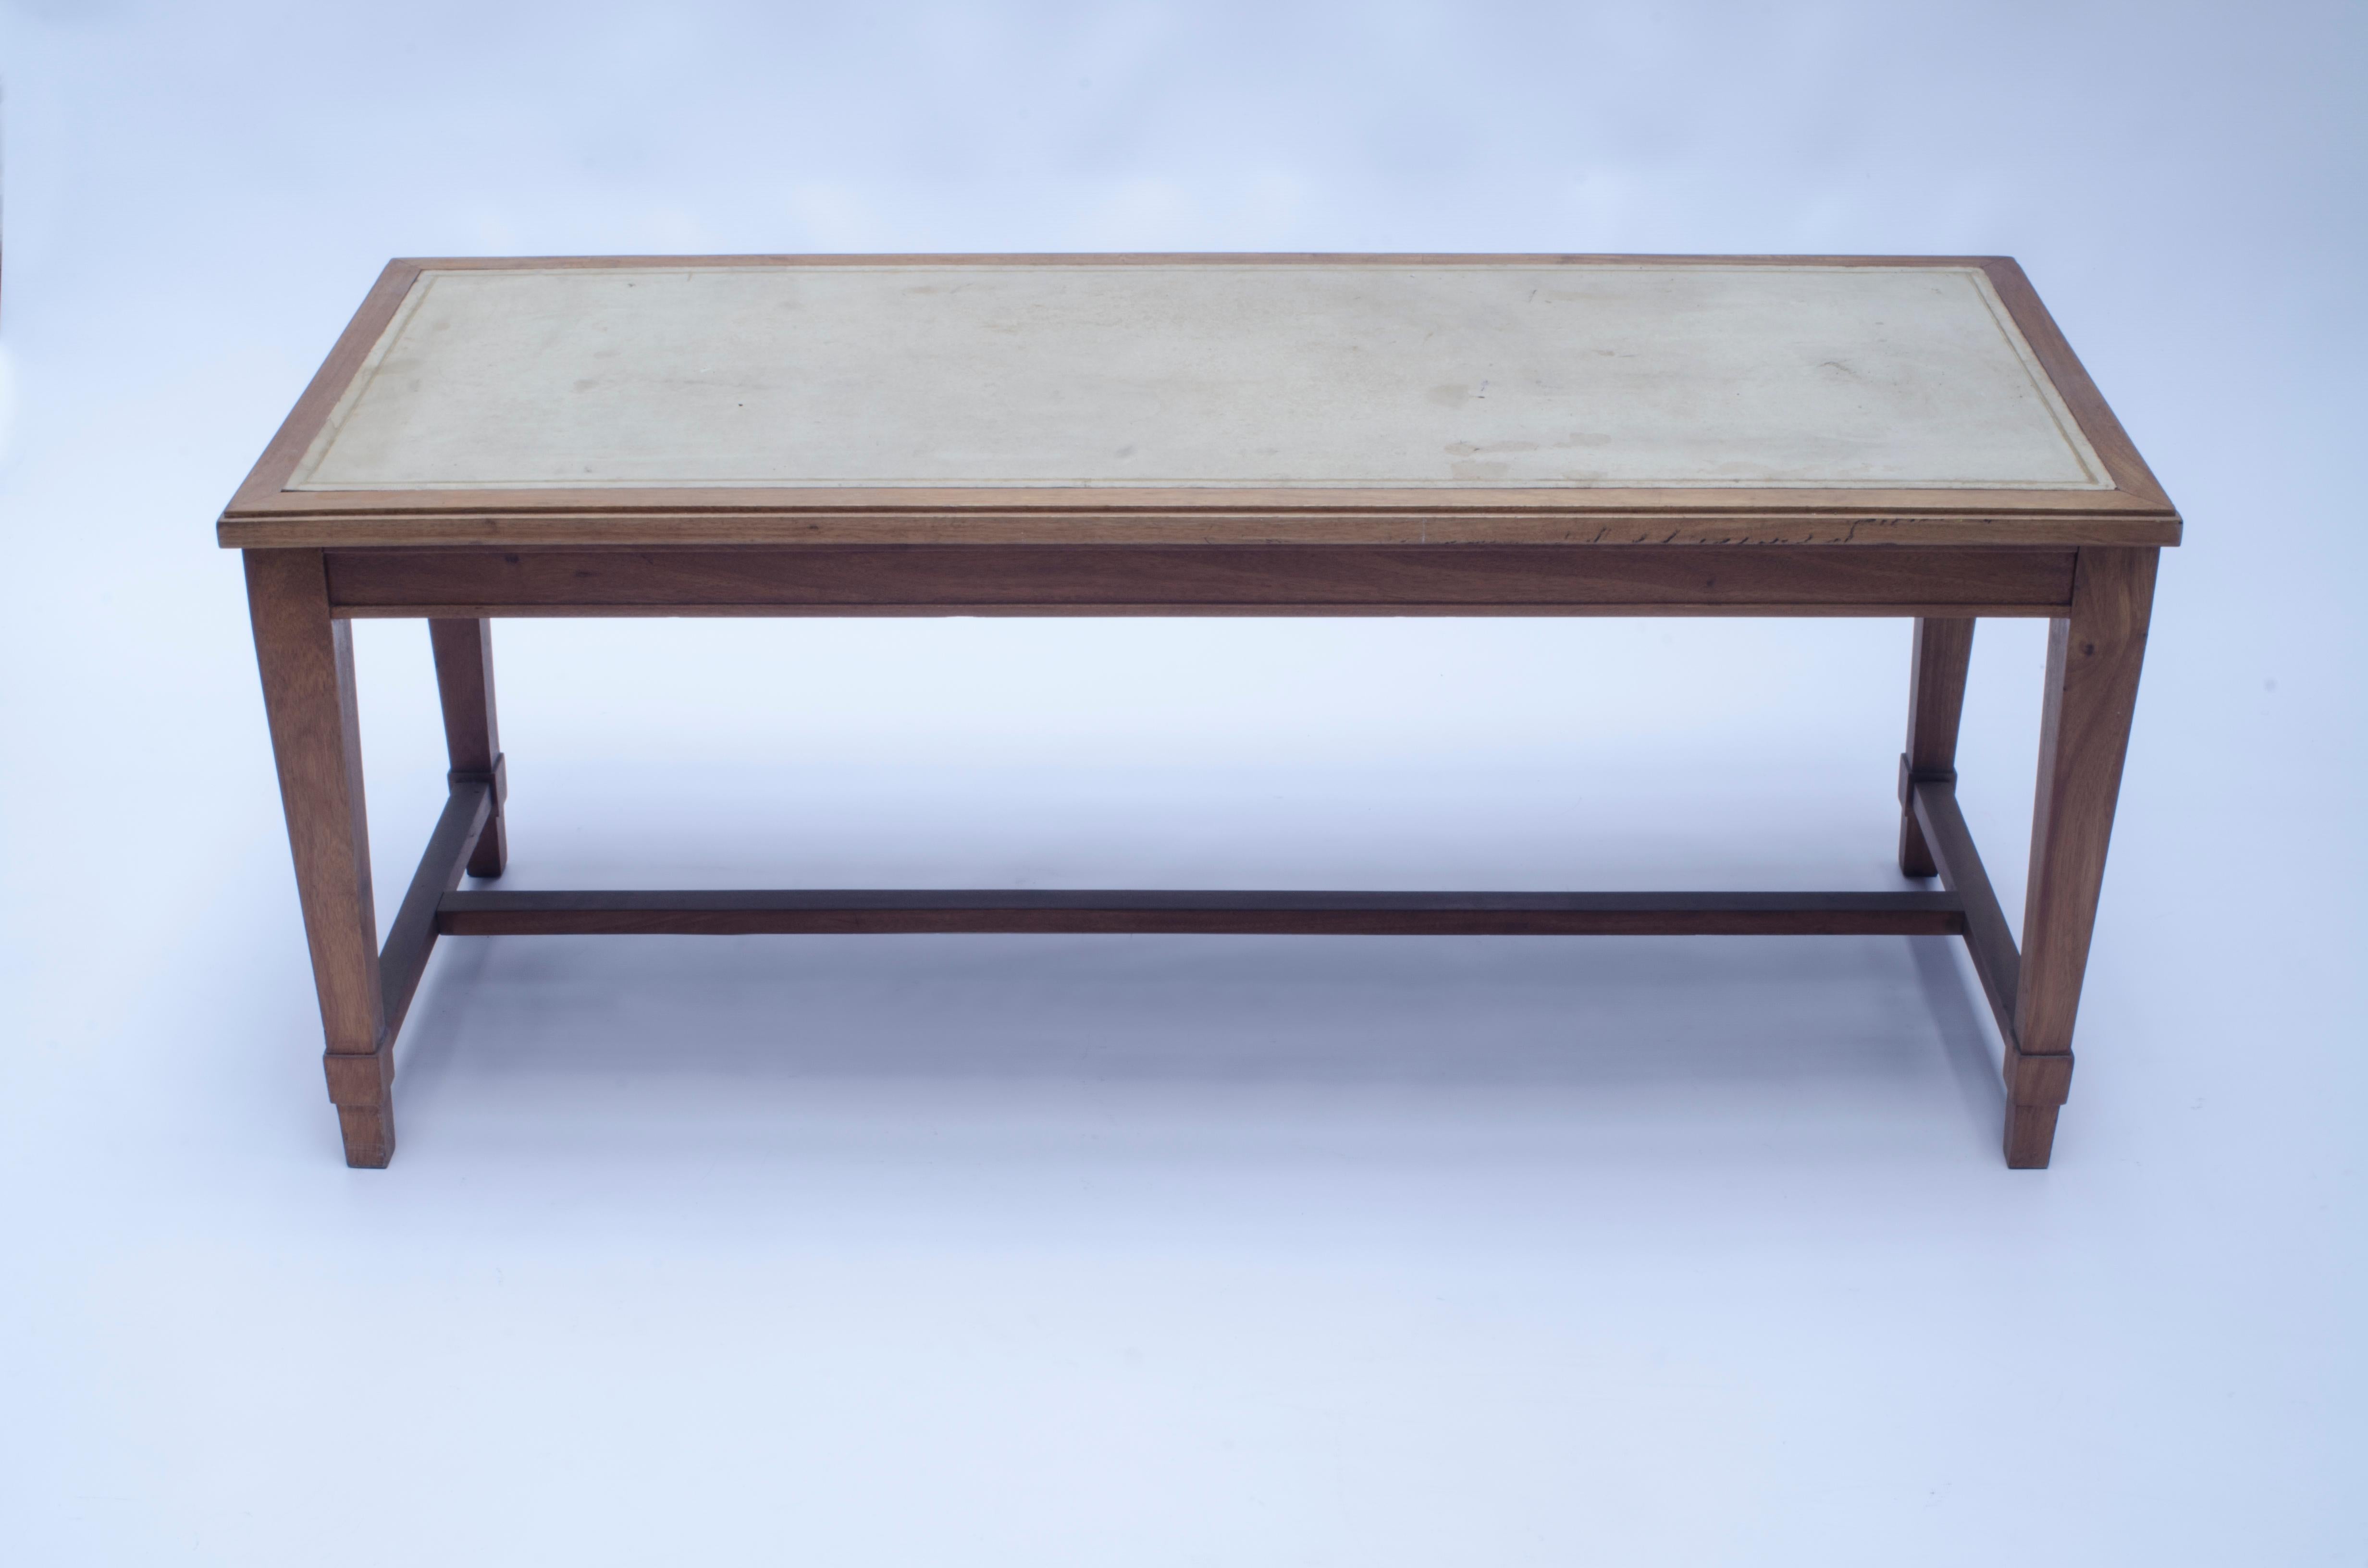 Tisch aus Eichenholz mit Lederplatte und goldener Vignette. Entwurf von Jean-Michel Frank (1895-1941), hergestellt von CASA COMTE (1932-1960), nummeriert 6760.

Argentinien, CIRCA 1940.